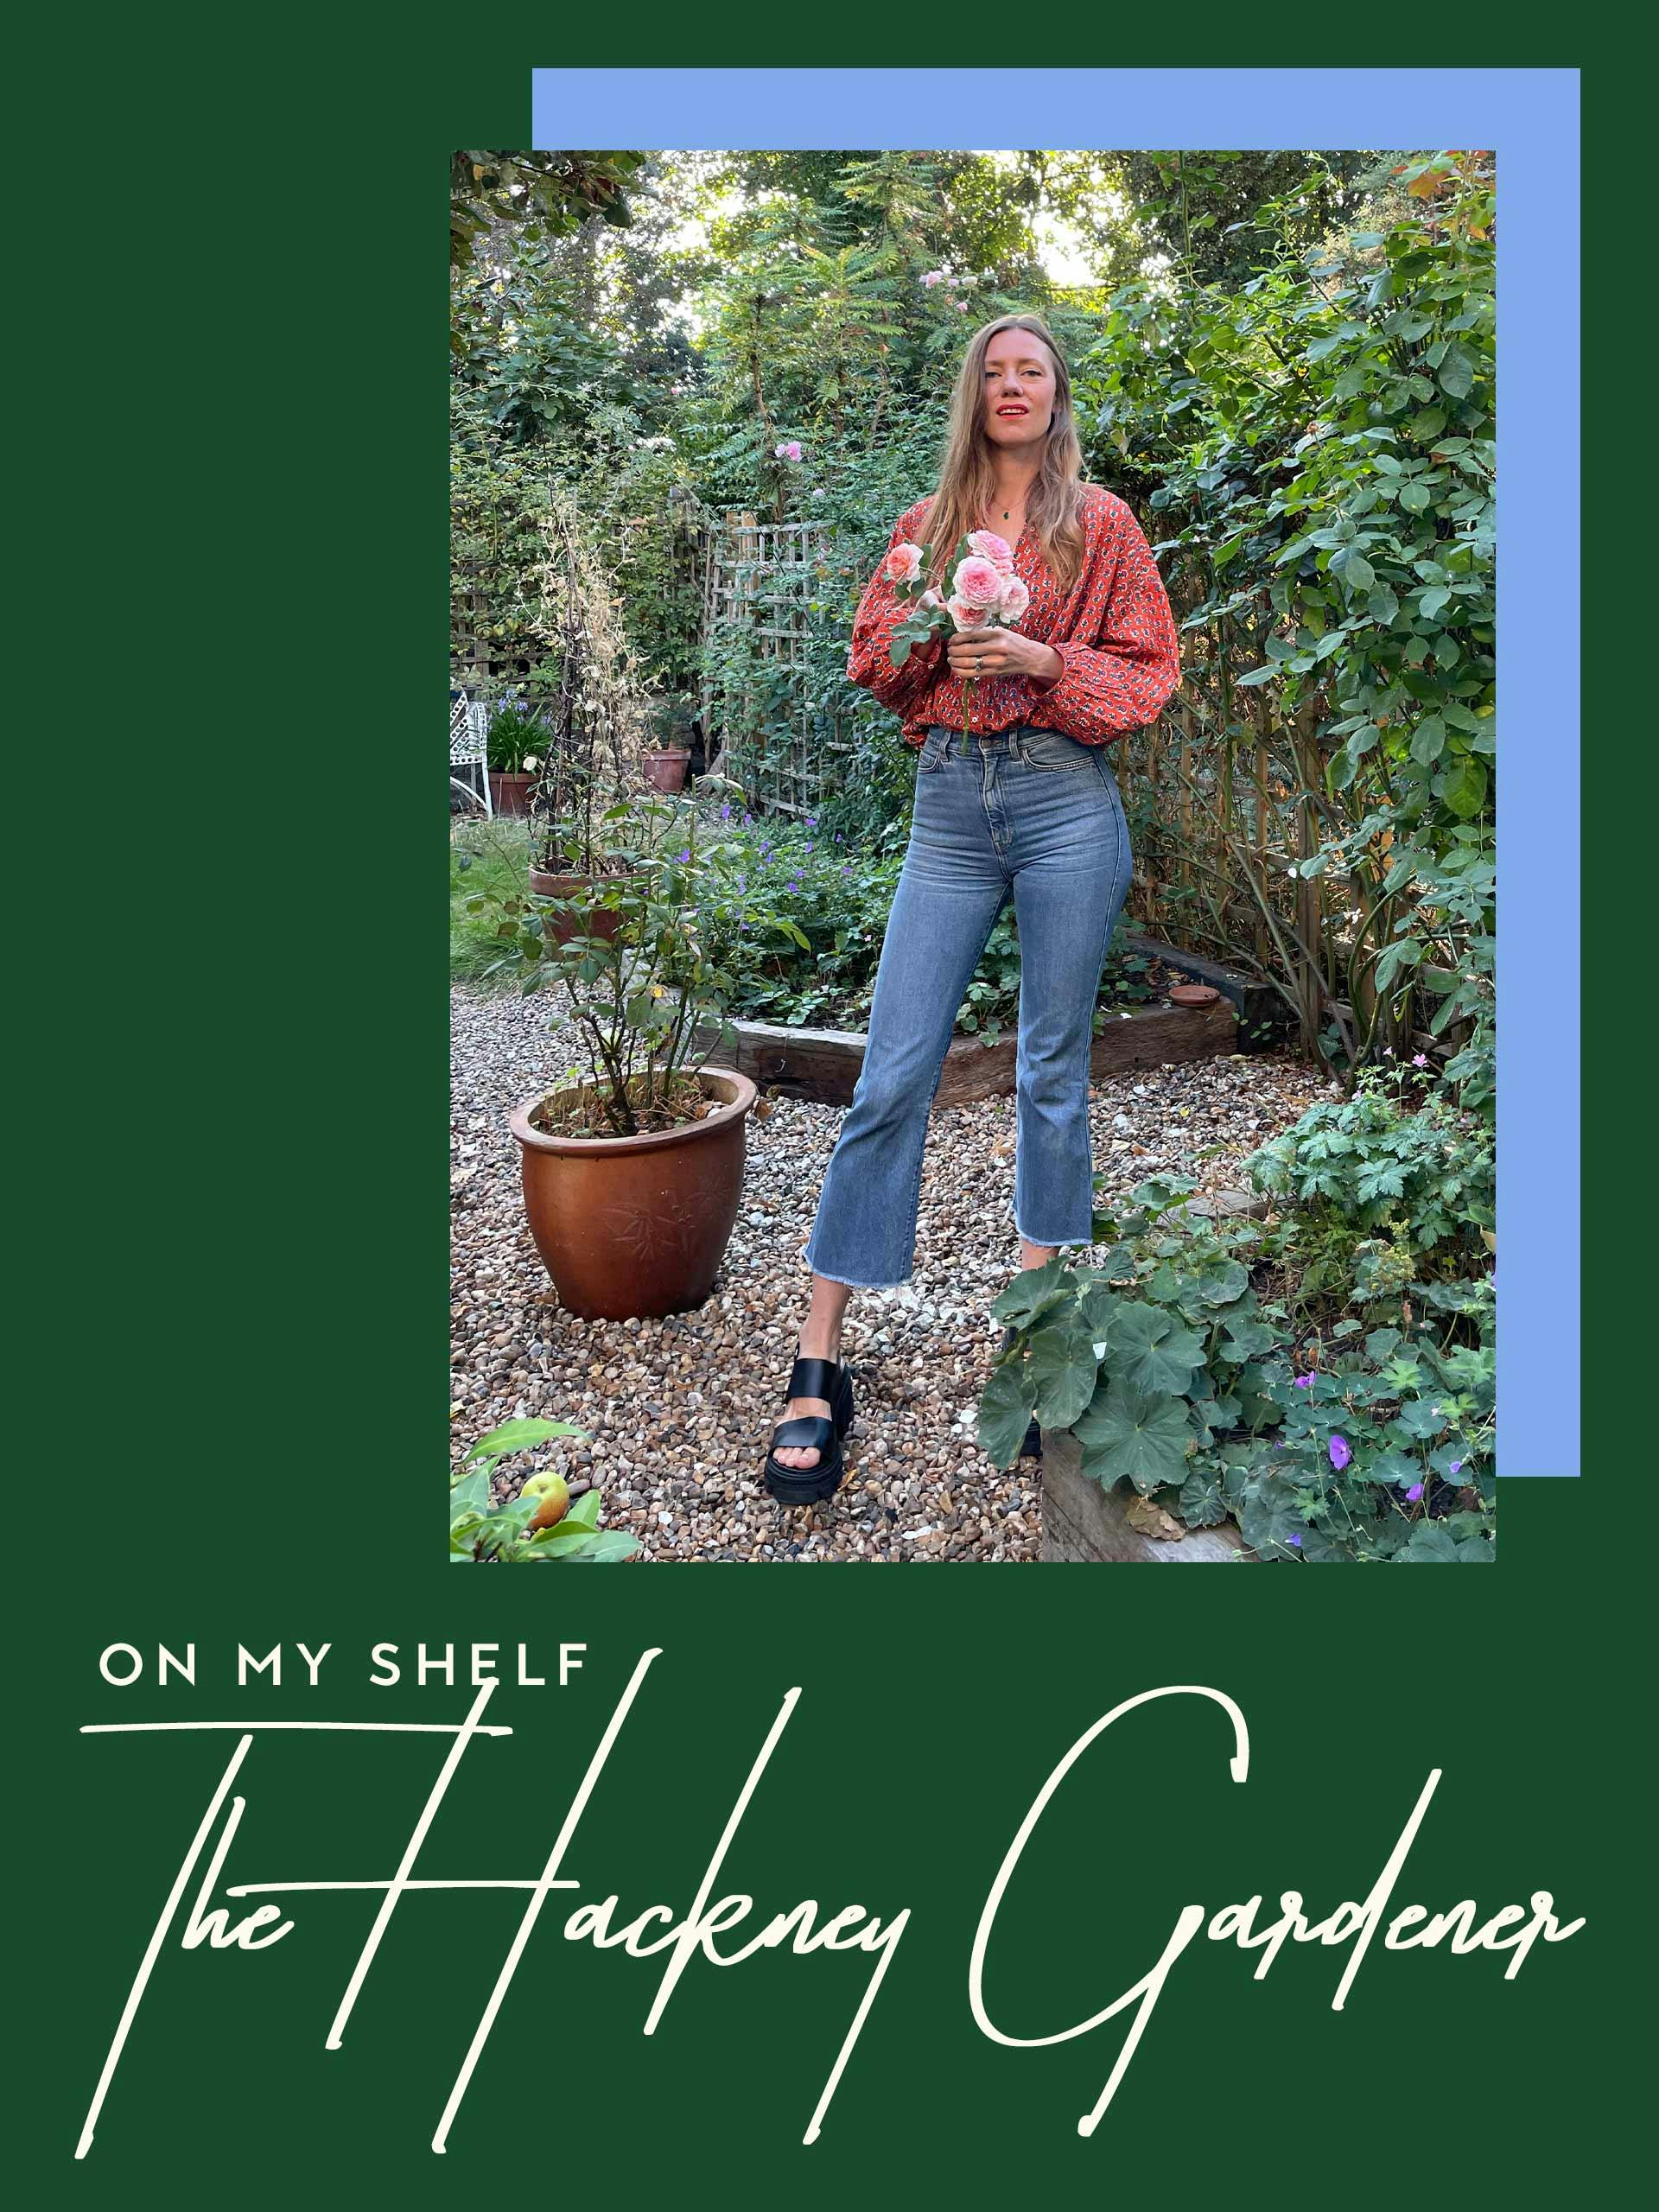 the-hackney-gardener-stories-portrait